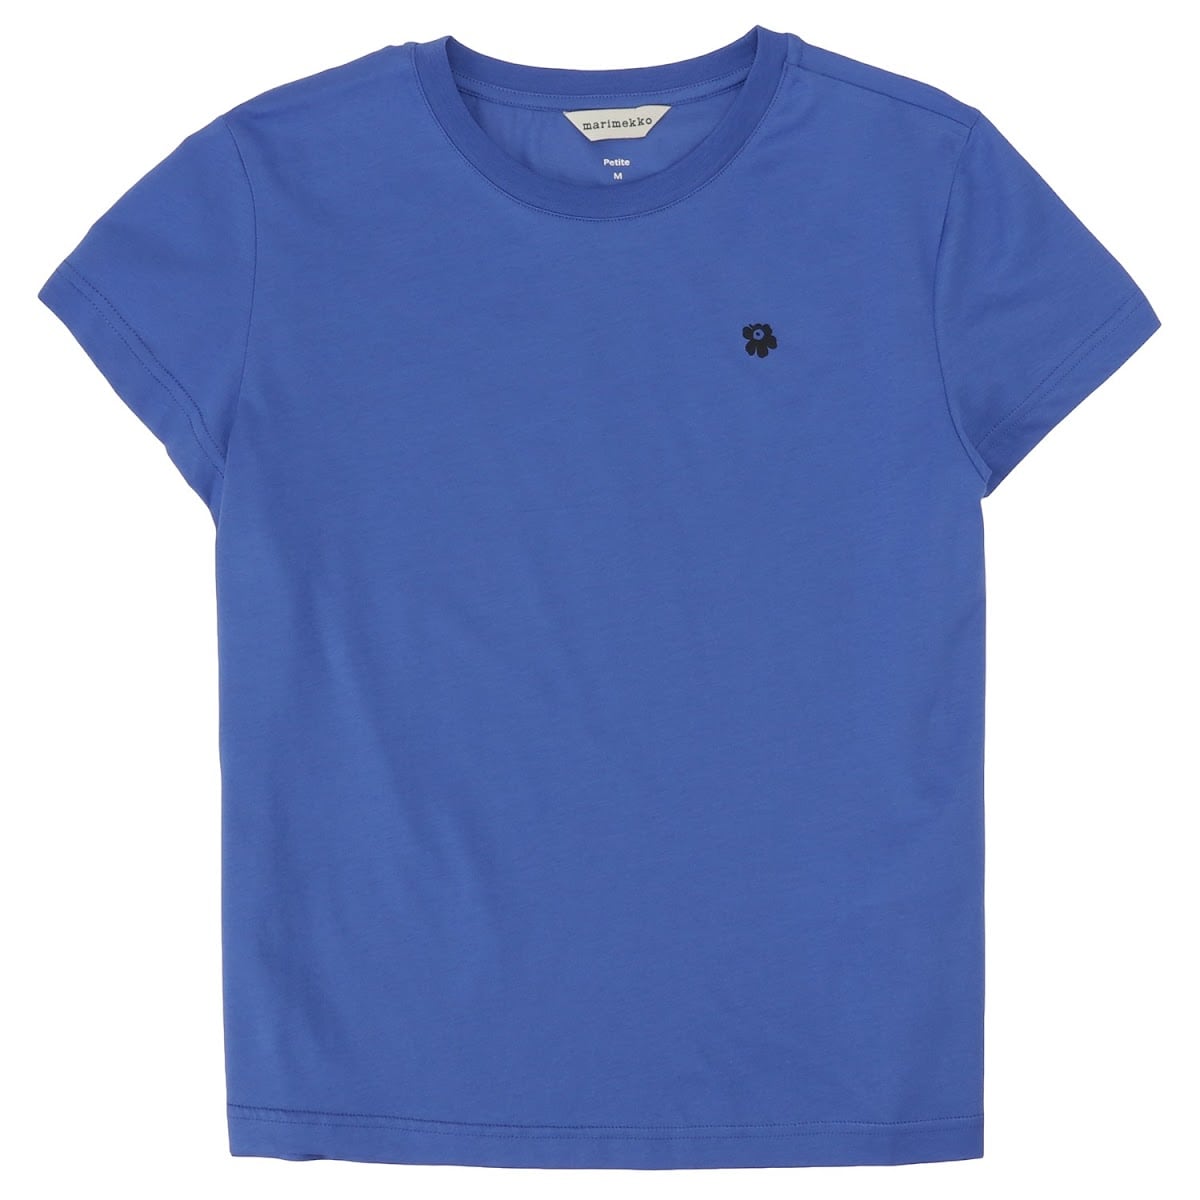 ウニッコが可愛いですタグ付き新品未使用マリメッコウニッコ可愛いブルーTシャツです。